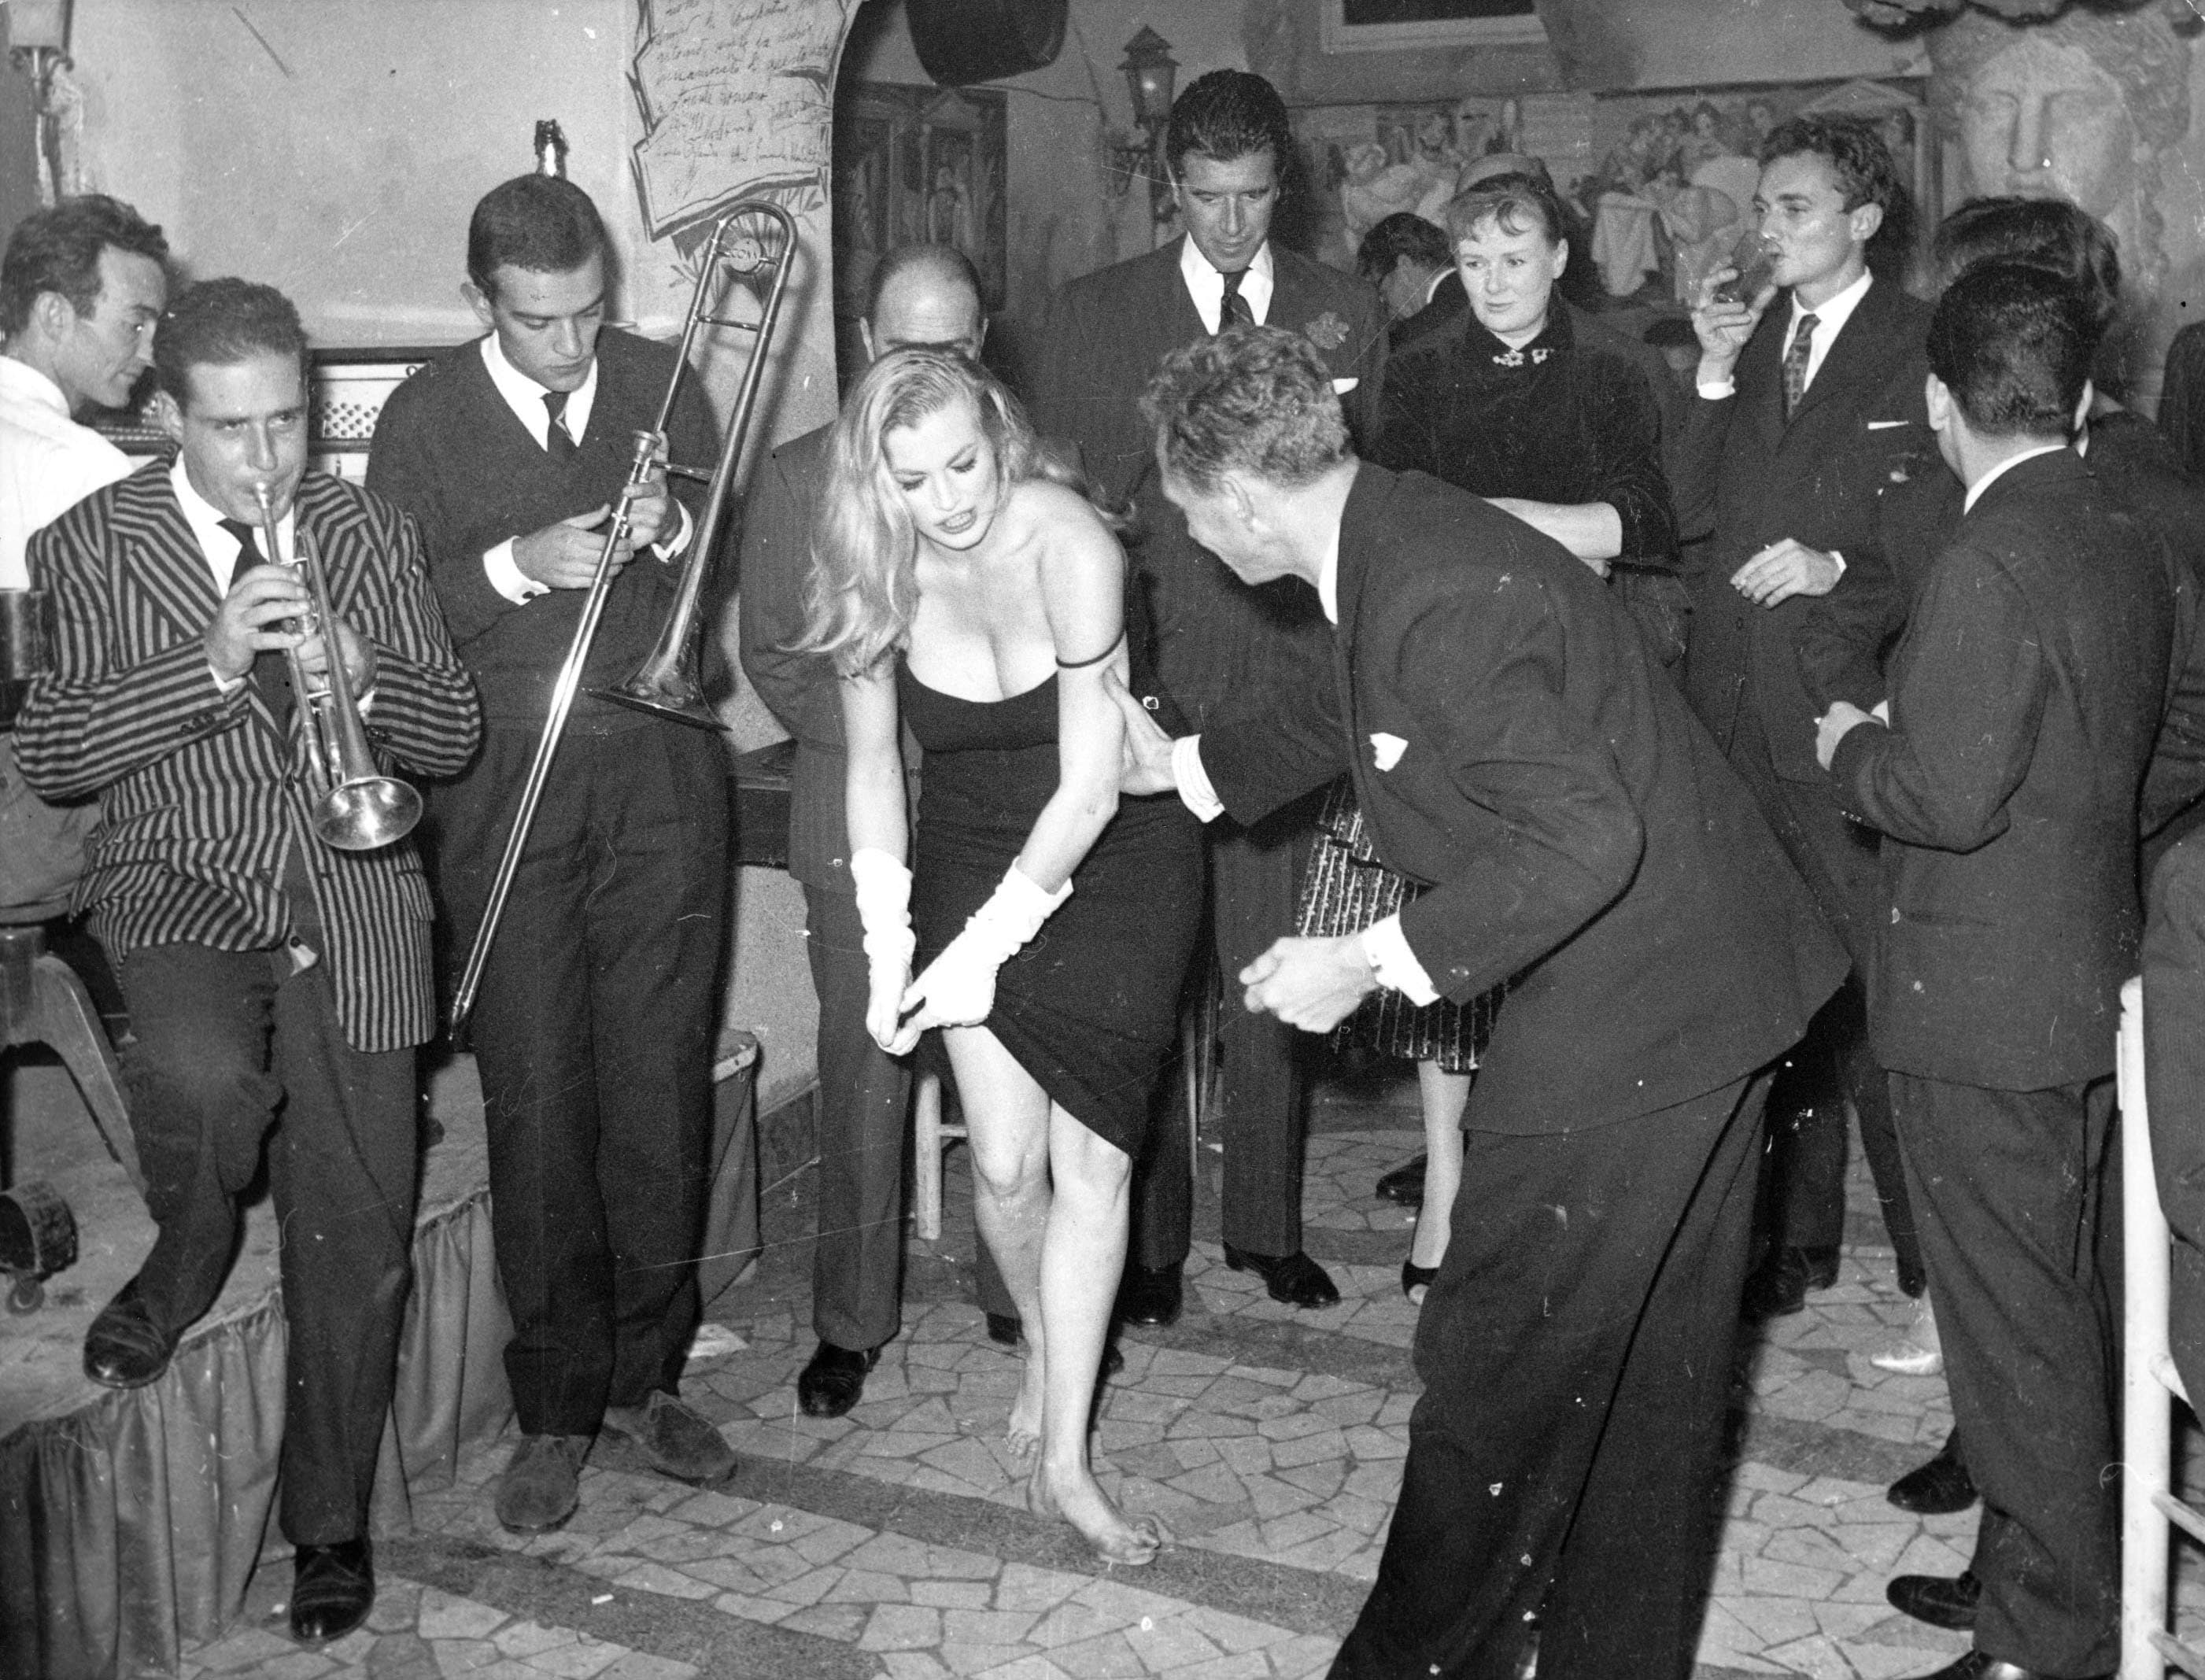 Scandalo al "Rugantino" di Roma: Anita Ekberg improvvisa uno spogliarello circondata dai paparazzi. E' il 5 novembre 1958